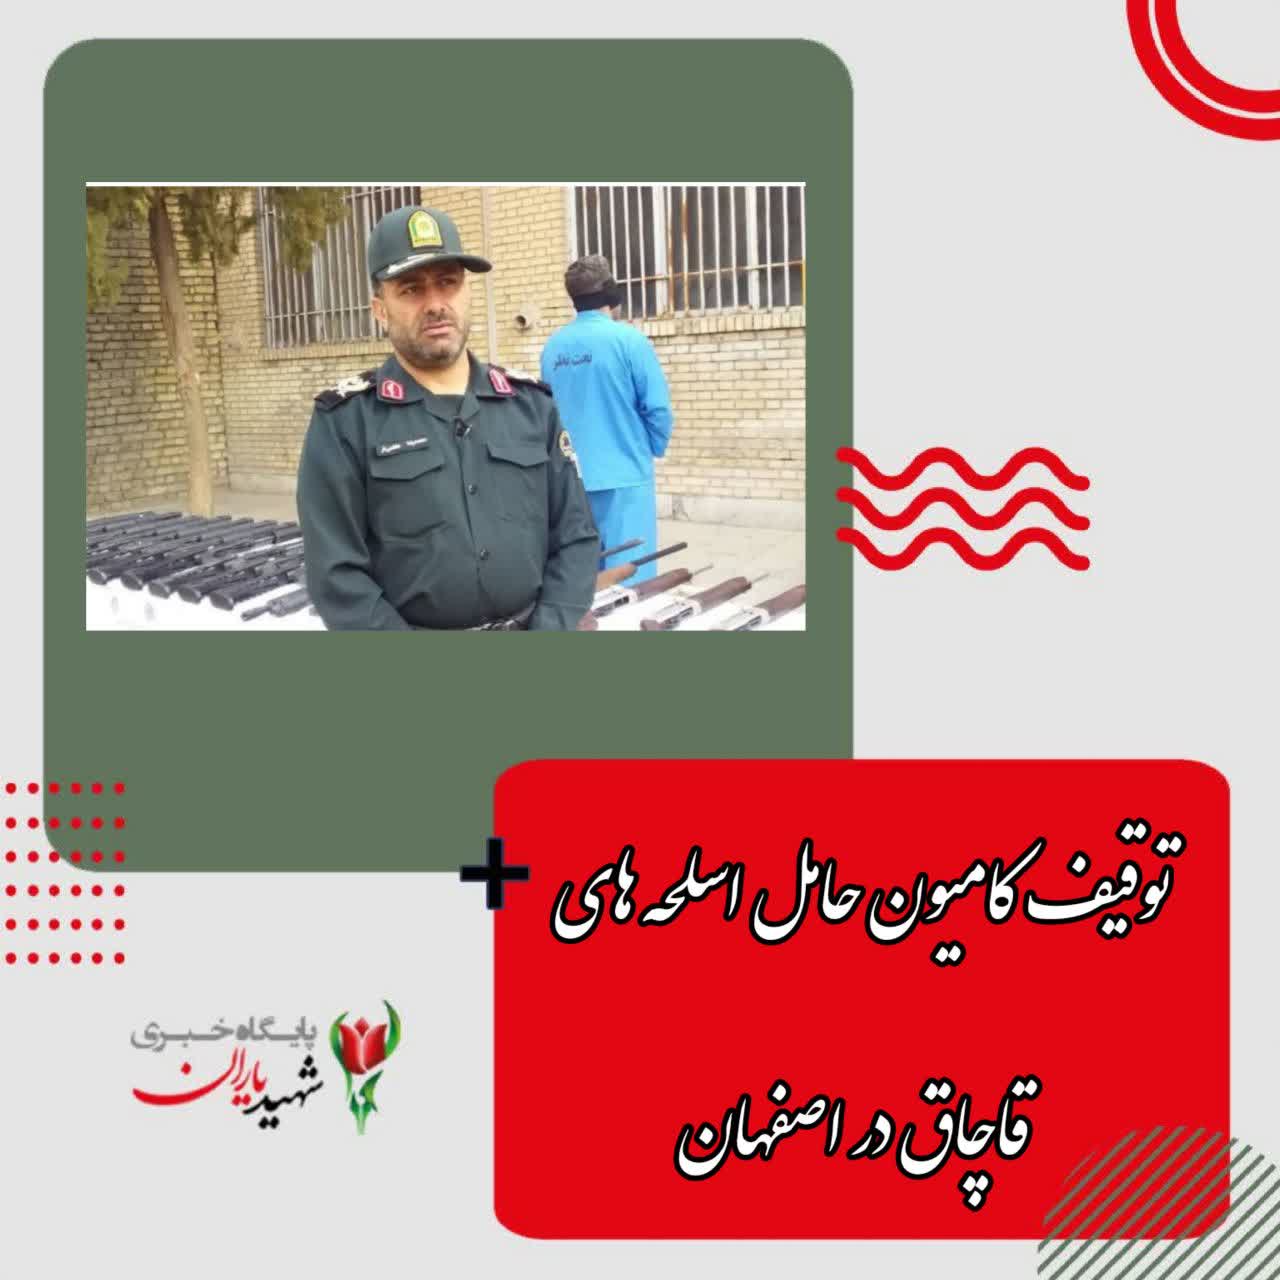 توقیف کامیون حامل اسلحه های قاچاق در اصفهان